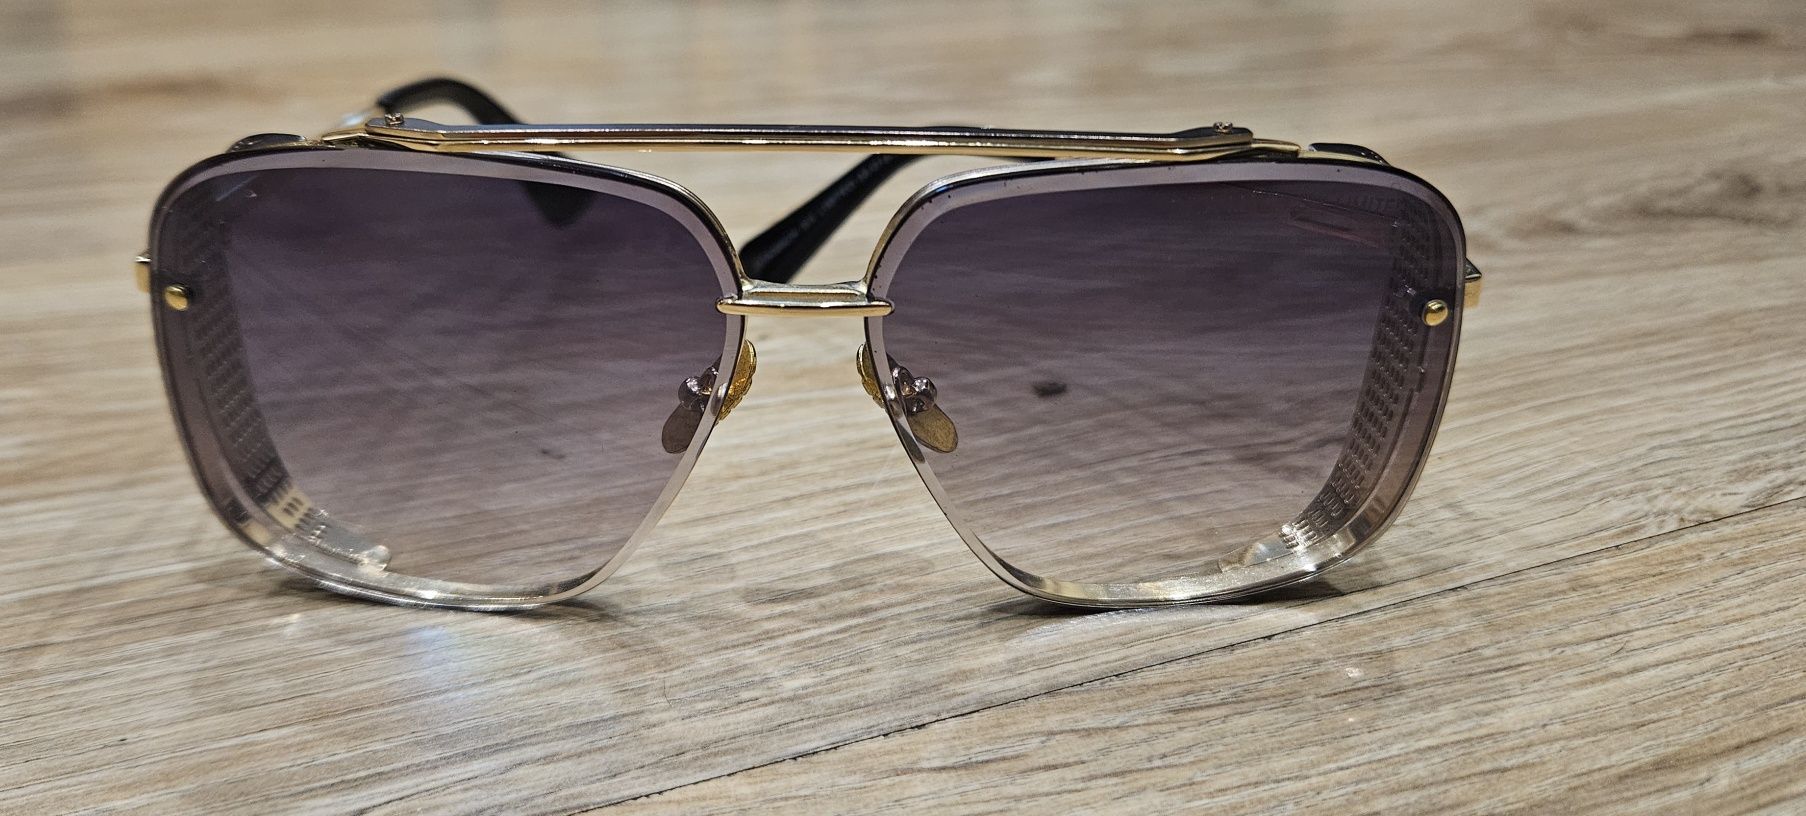 Okulary przeciwsłoneczne dita mach six limited